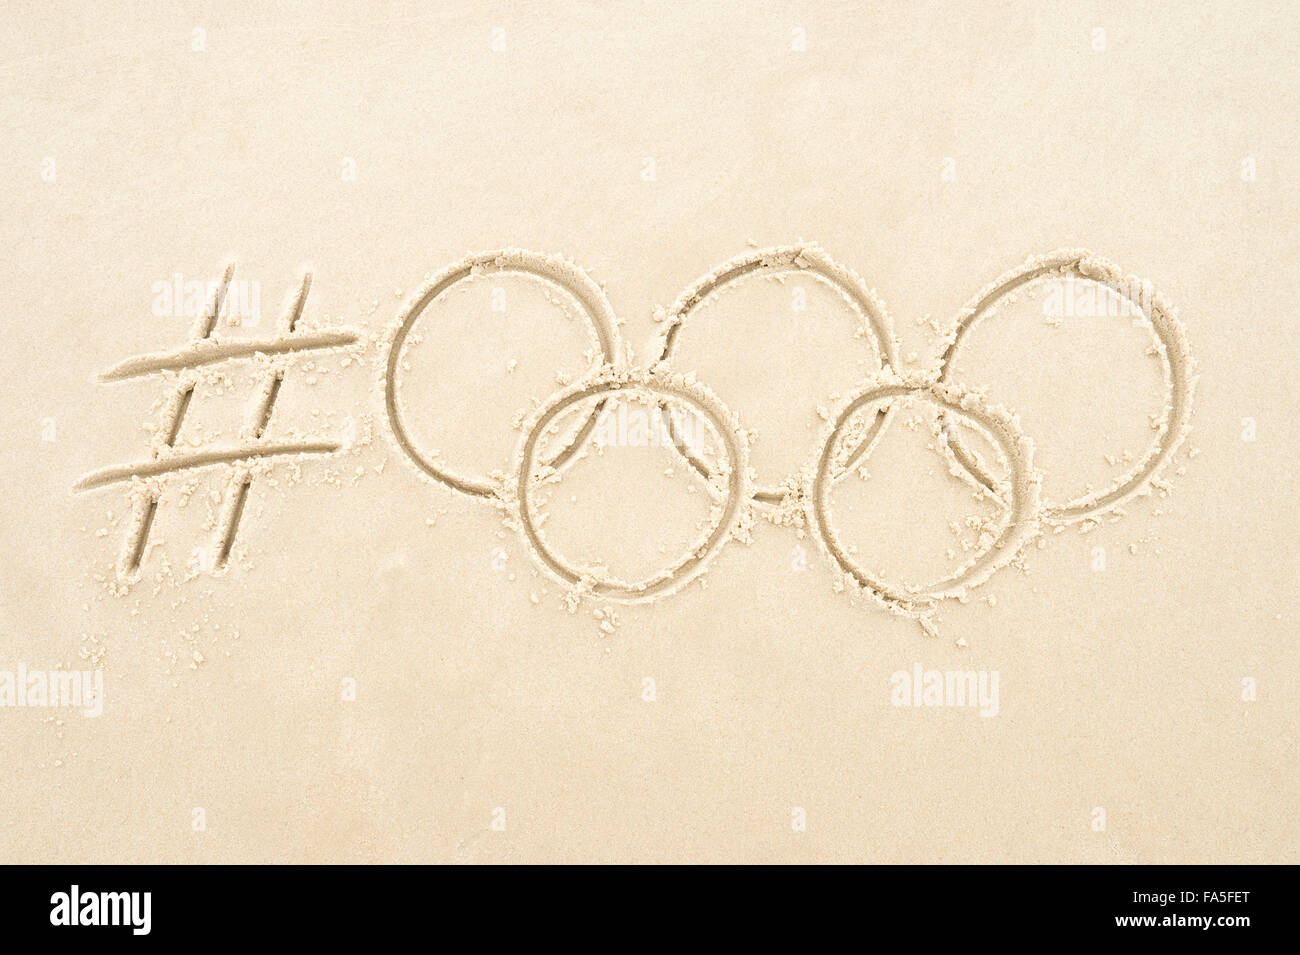 RIO DE JANEIRO, Brasile - 10 novembre 2015: hashtag manoscritta social media messaggio per Rio 2016 Olimpiadi con anelli in sabbia. Foto Stock